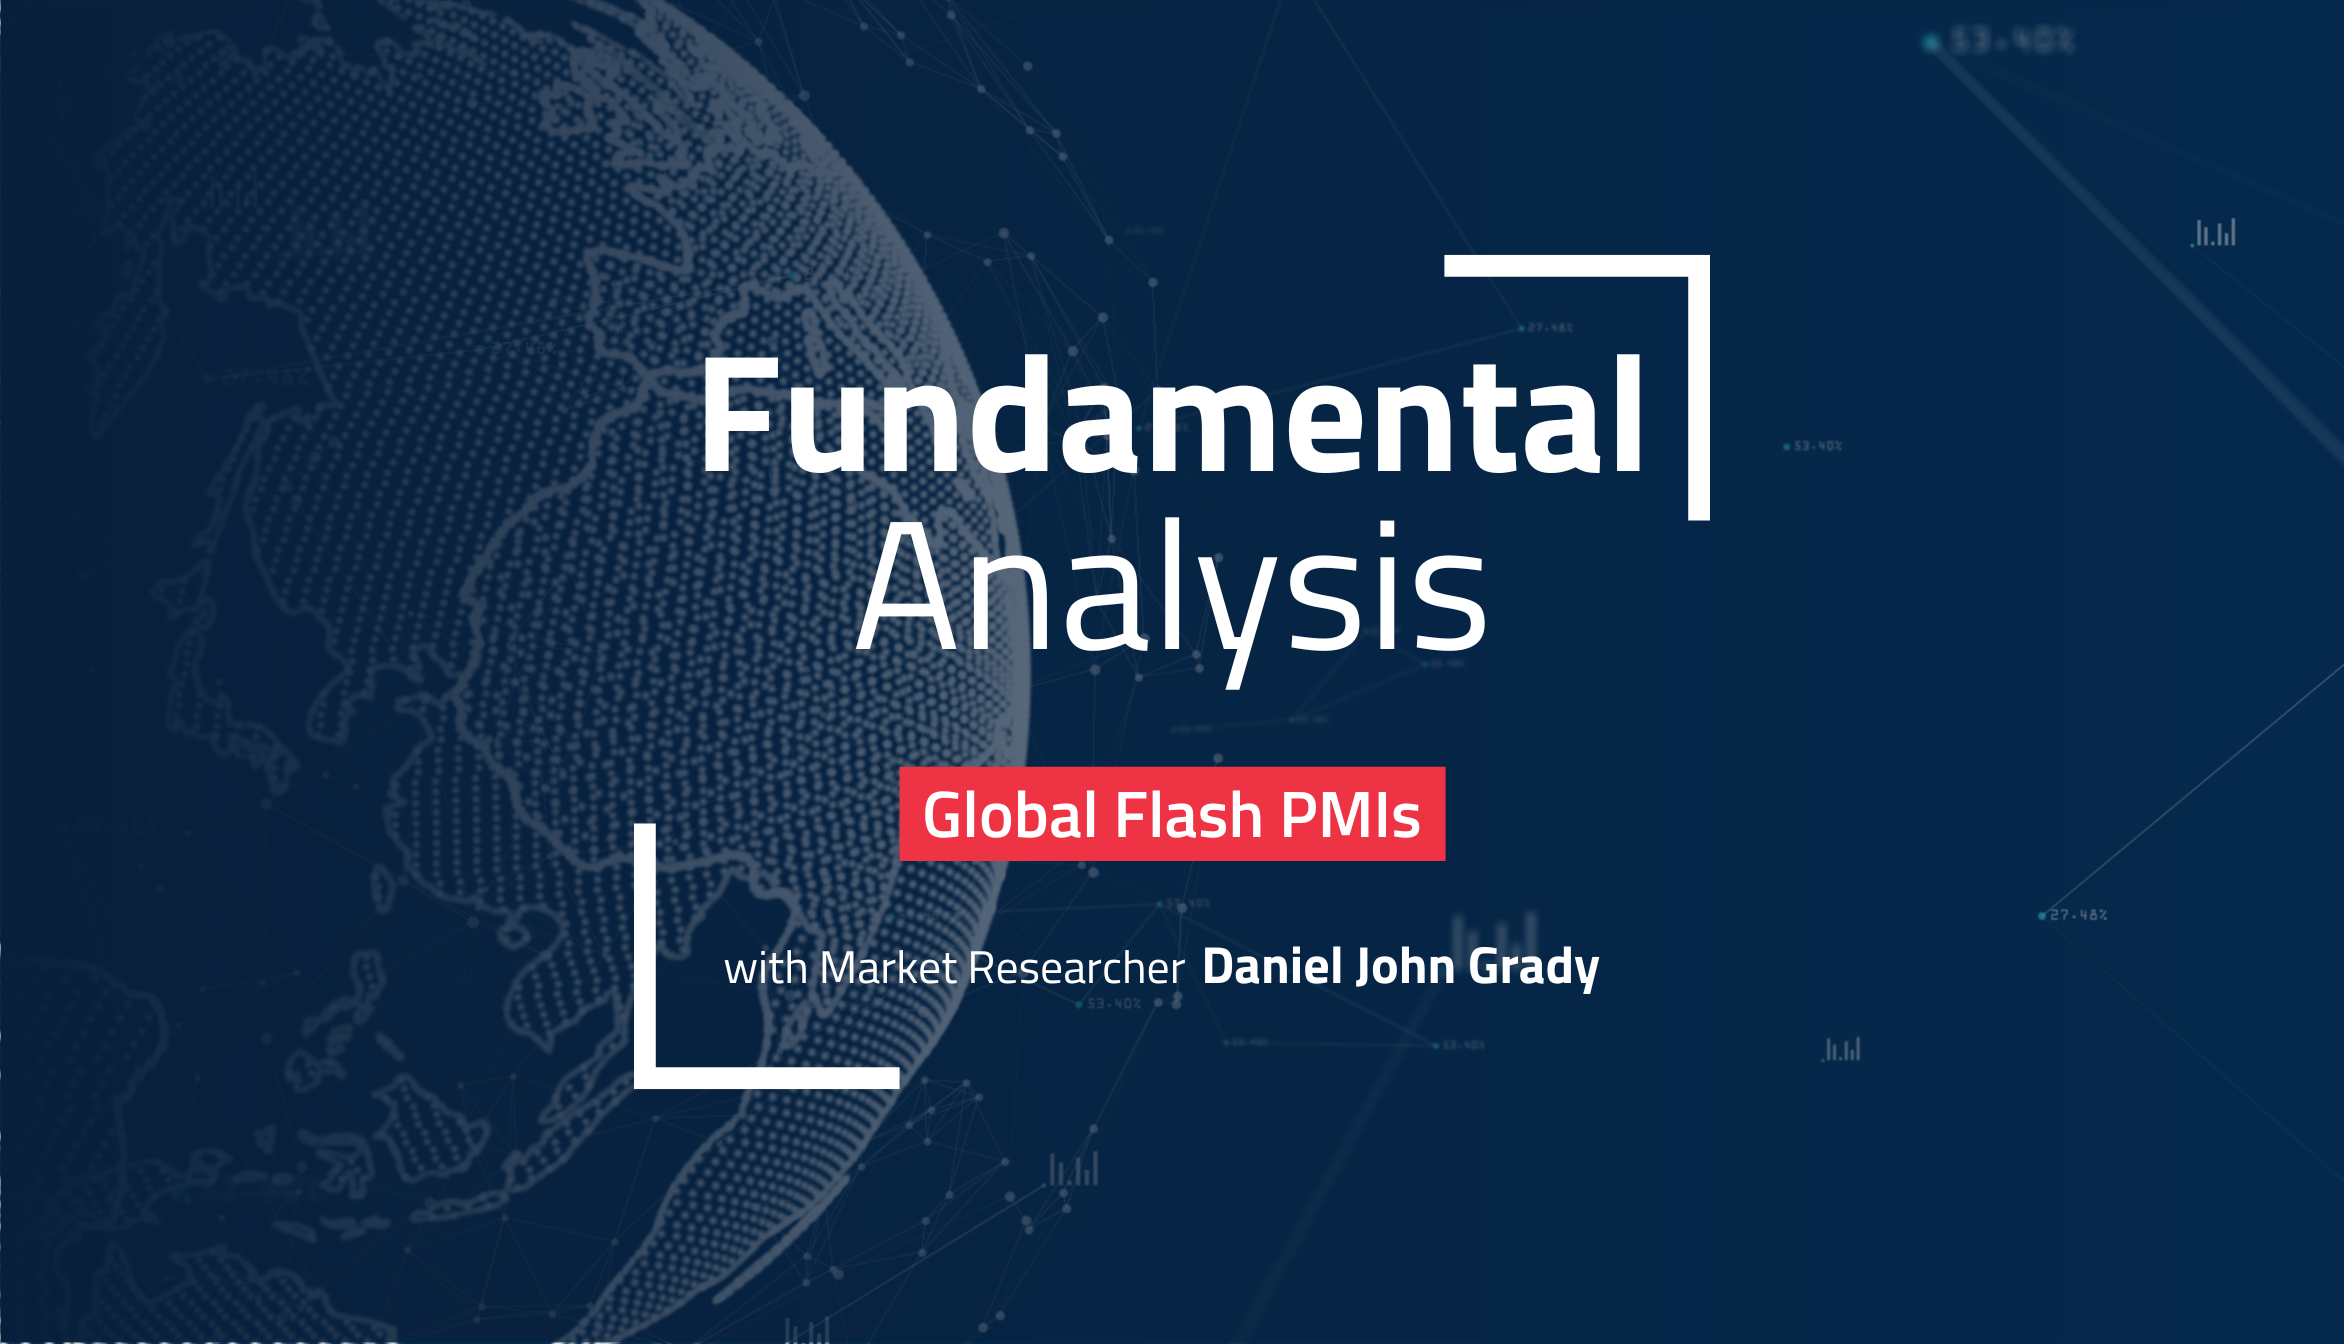 Globale Flash PMI-er, og avkastningen til investoroptimismen?